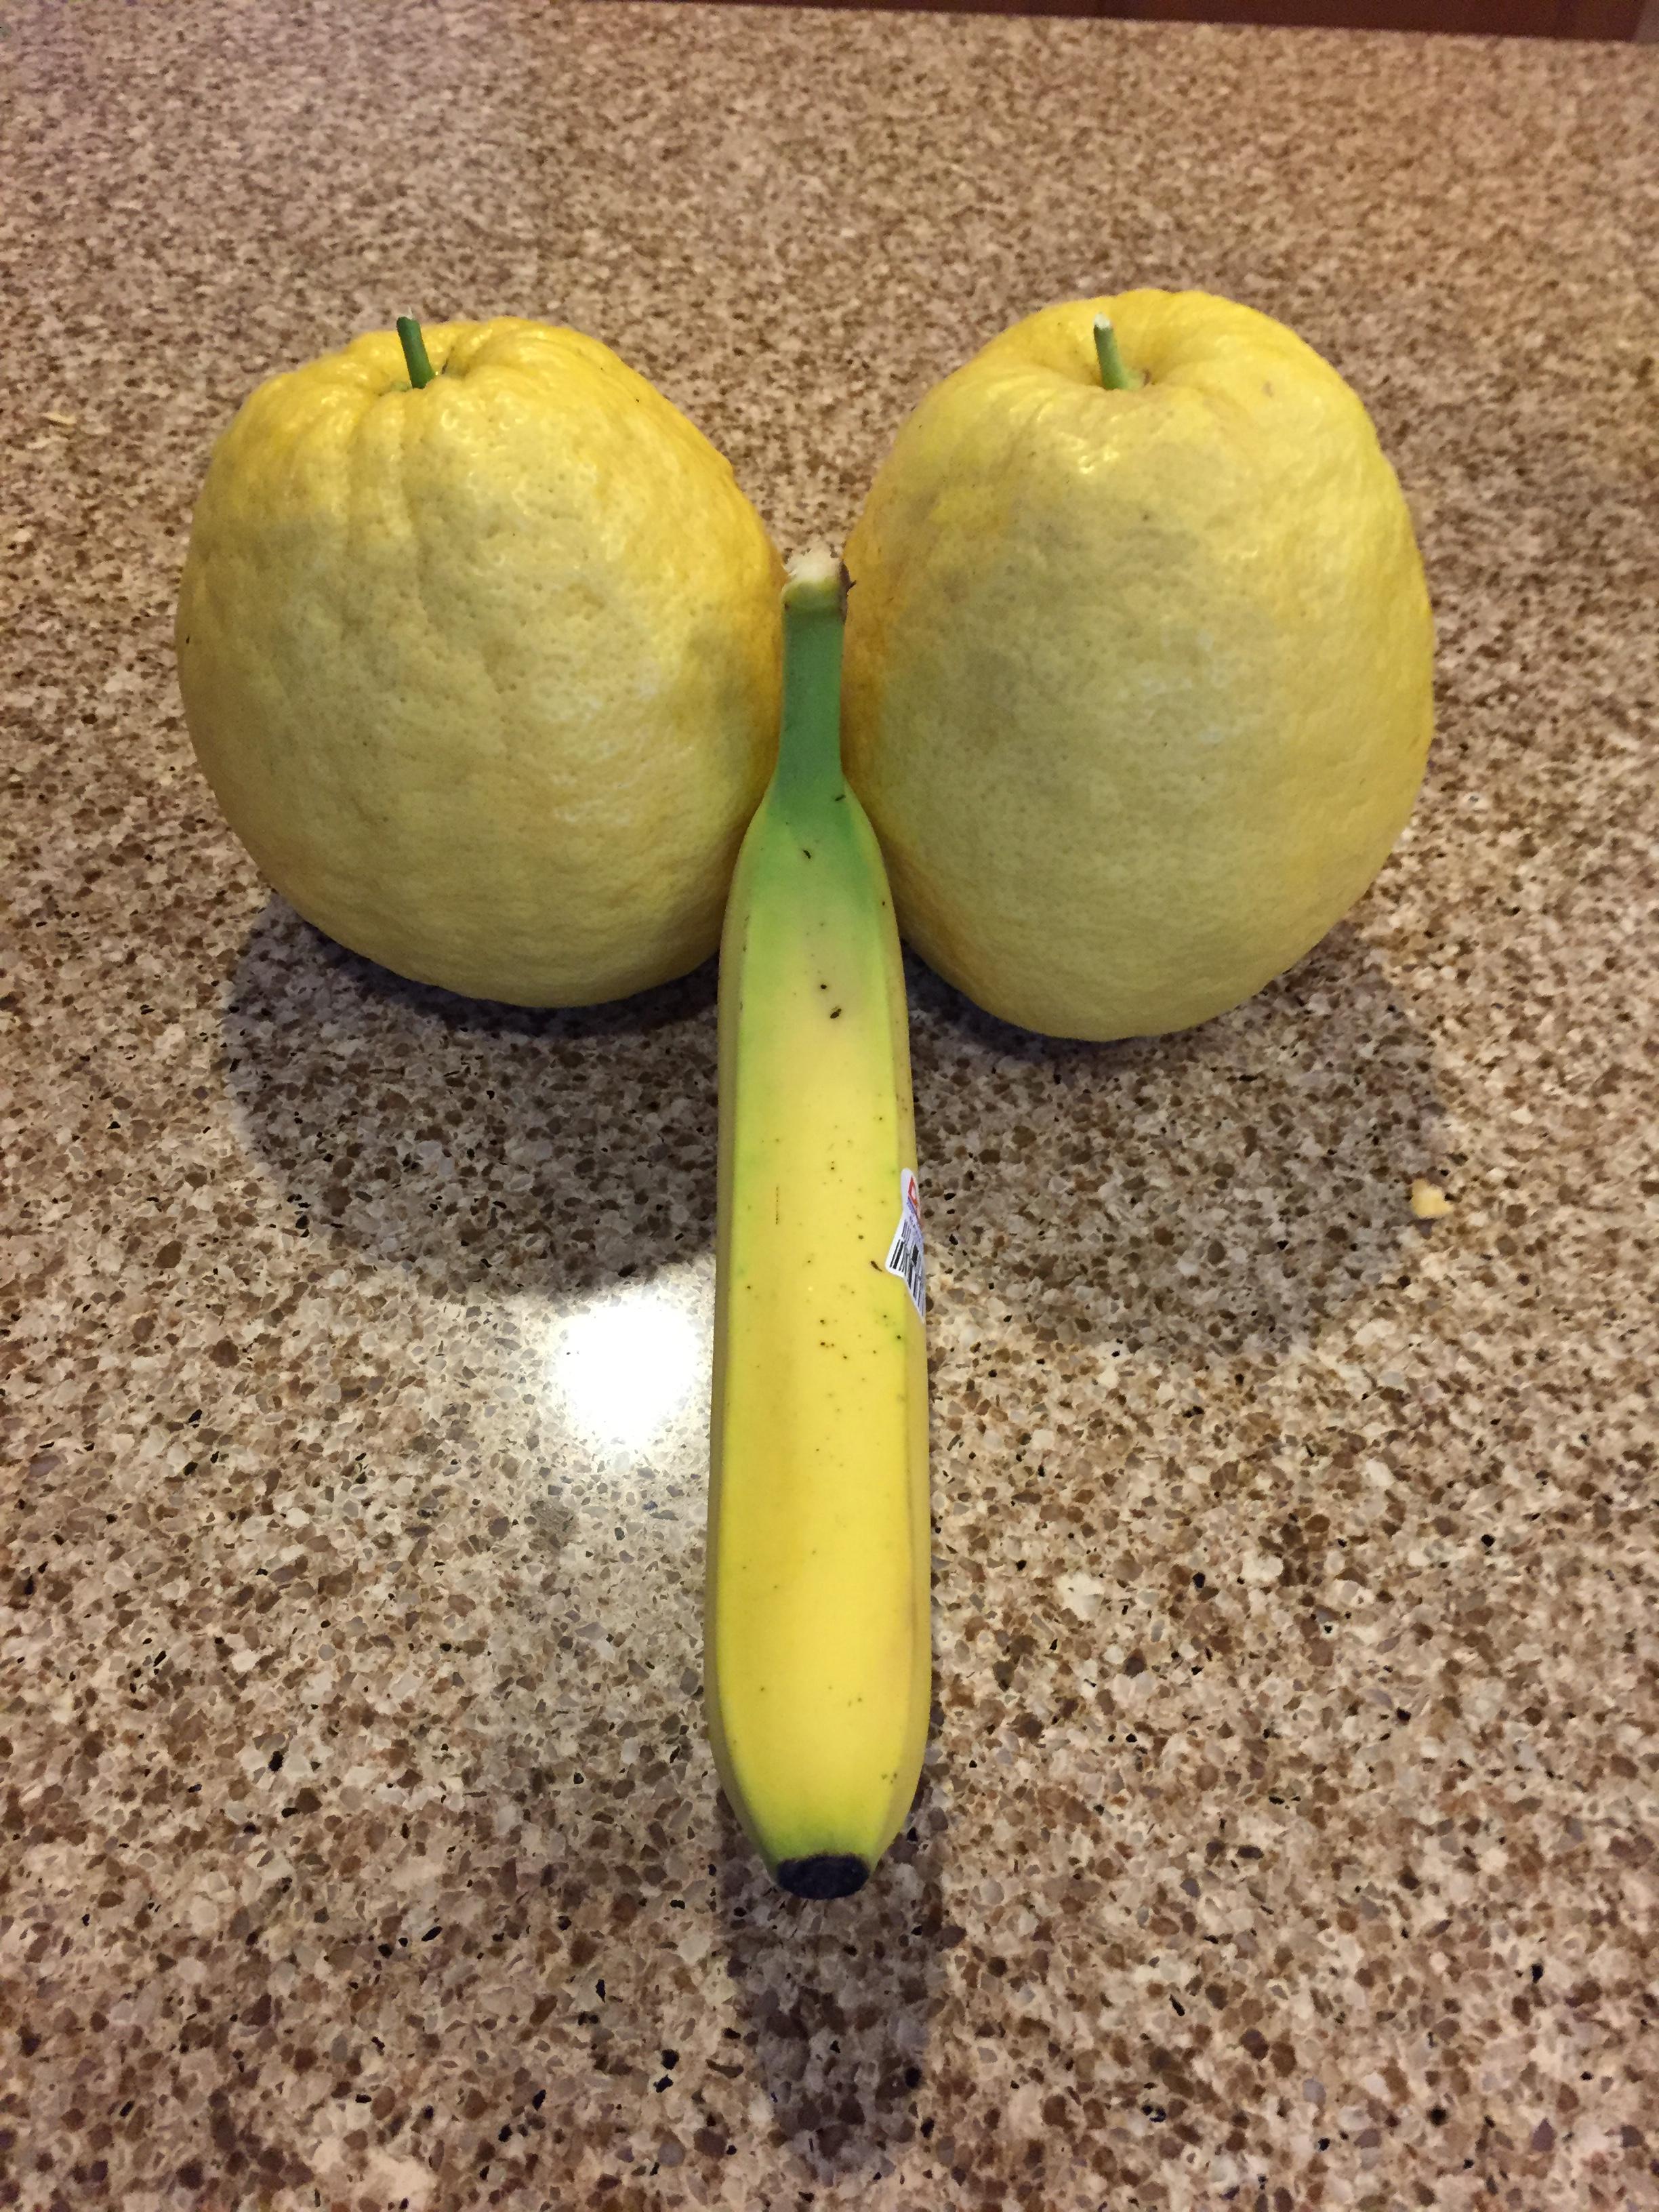 Giant lemons (banana for scale) - Album on Imgur